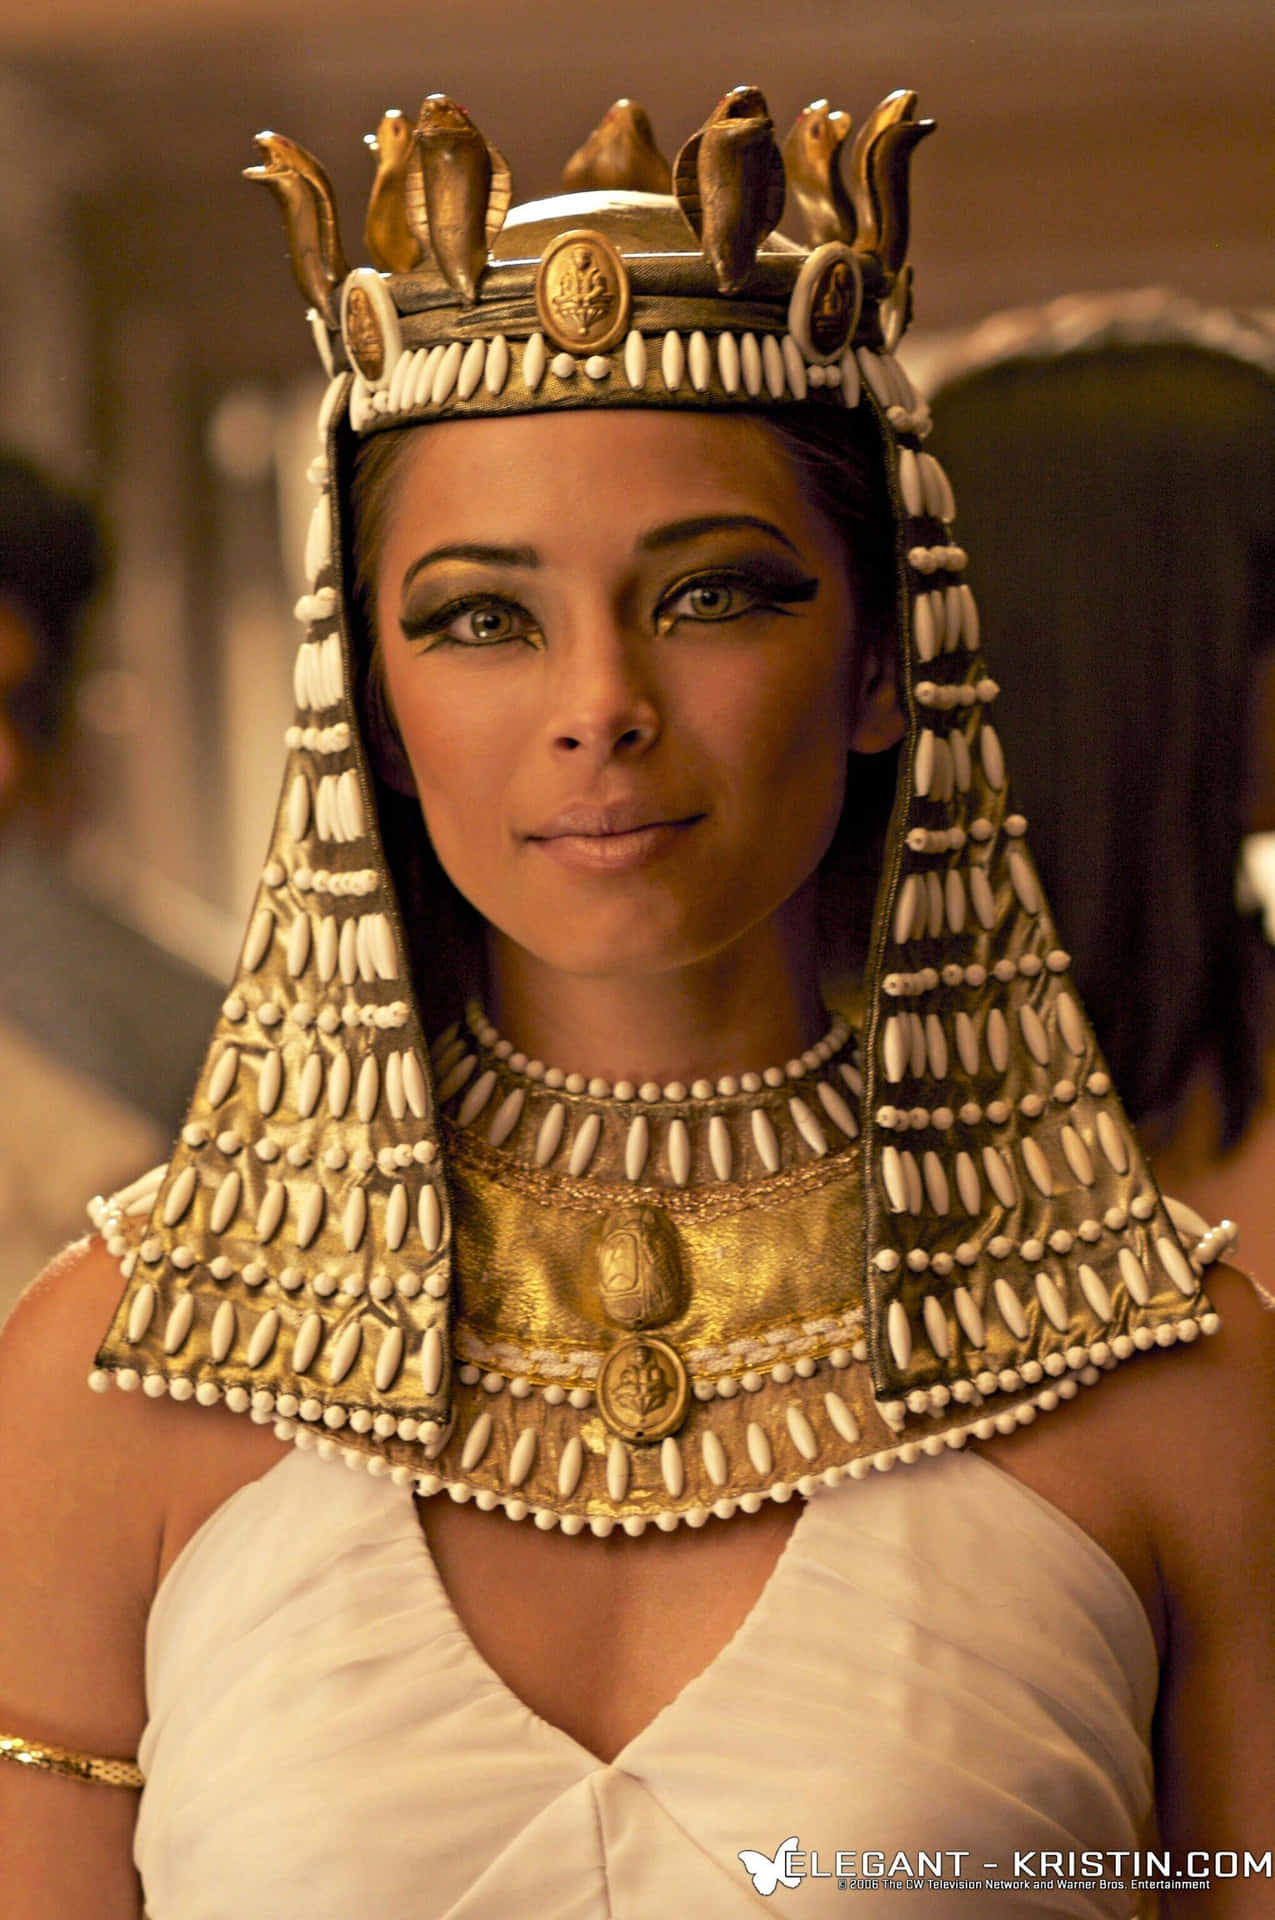 The Last Pharaoh of Egypt - Cleopatra